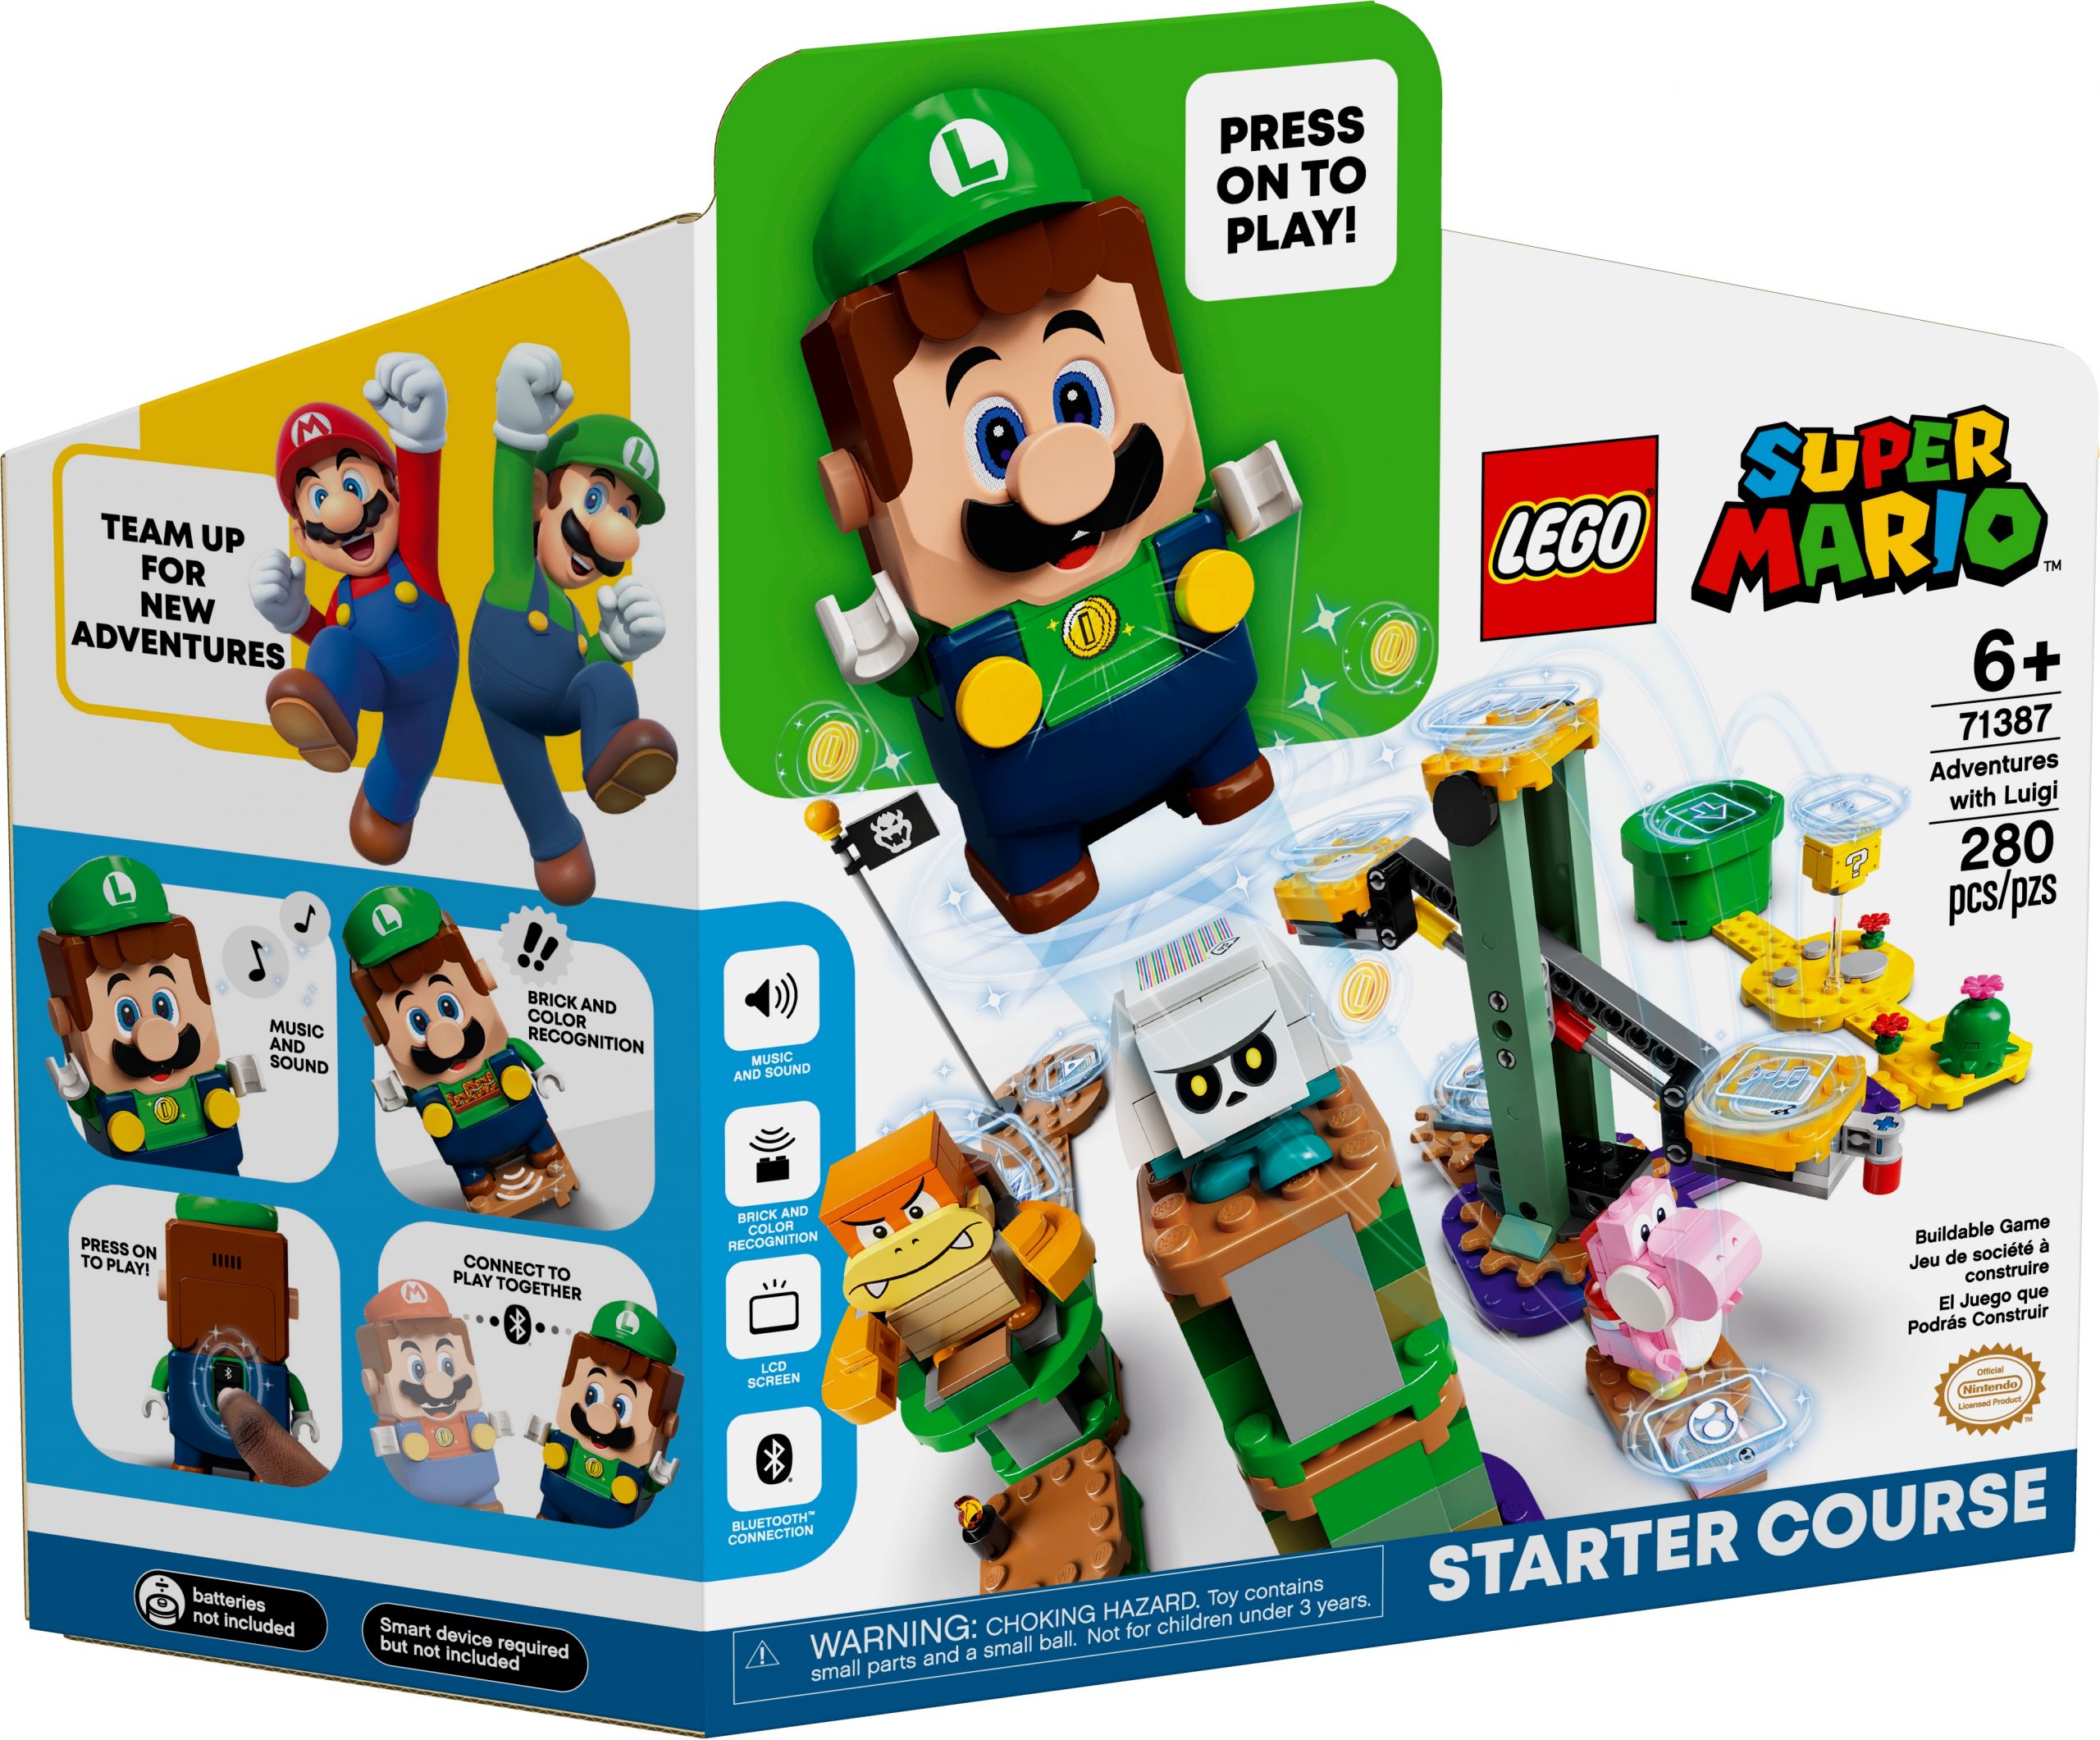 LEGO Super Mario Adventures with Luigi Starter Course (71387) Officially Announced - Pre-Order 